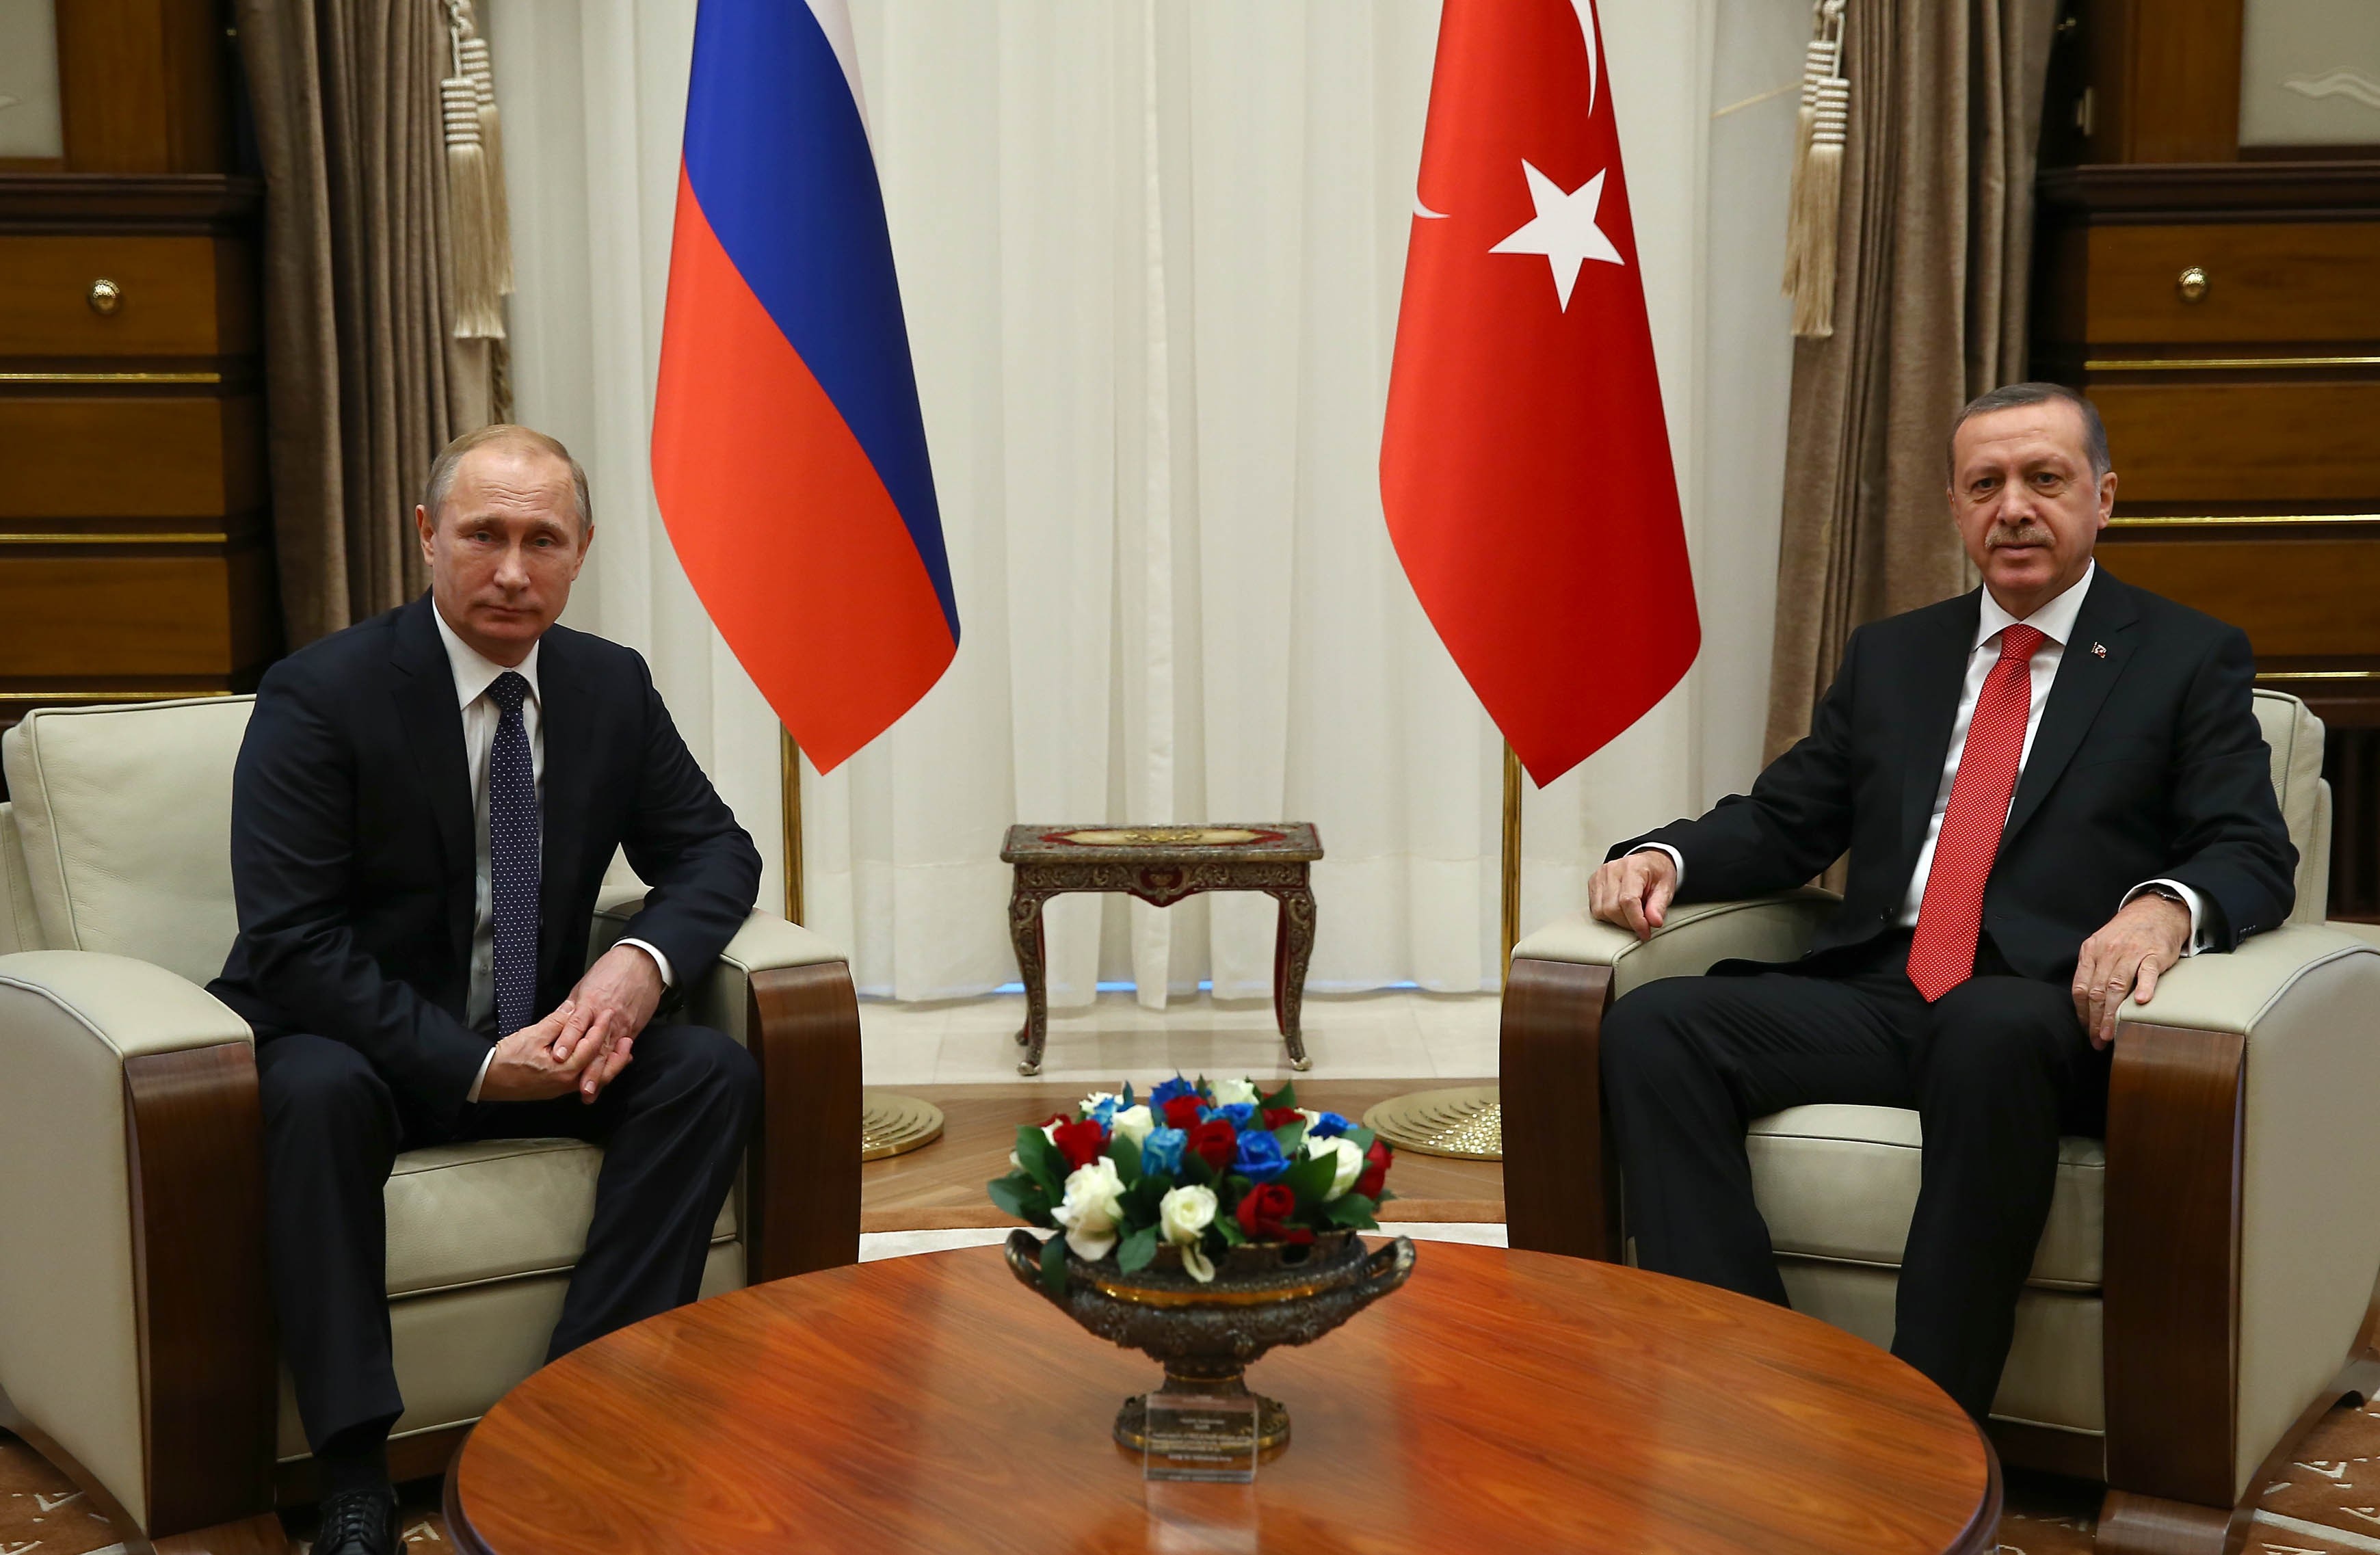 زيارة "بوتين" لتركيا وإعادة الحياة للعلاقات القديمة